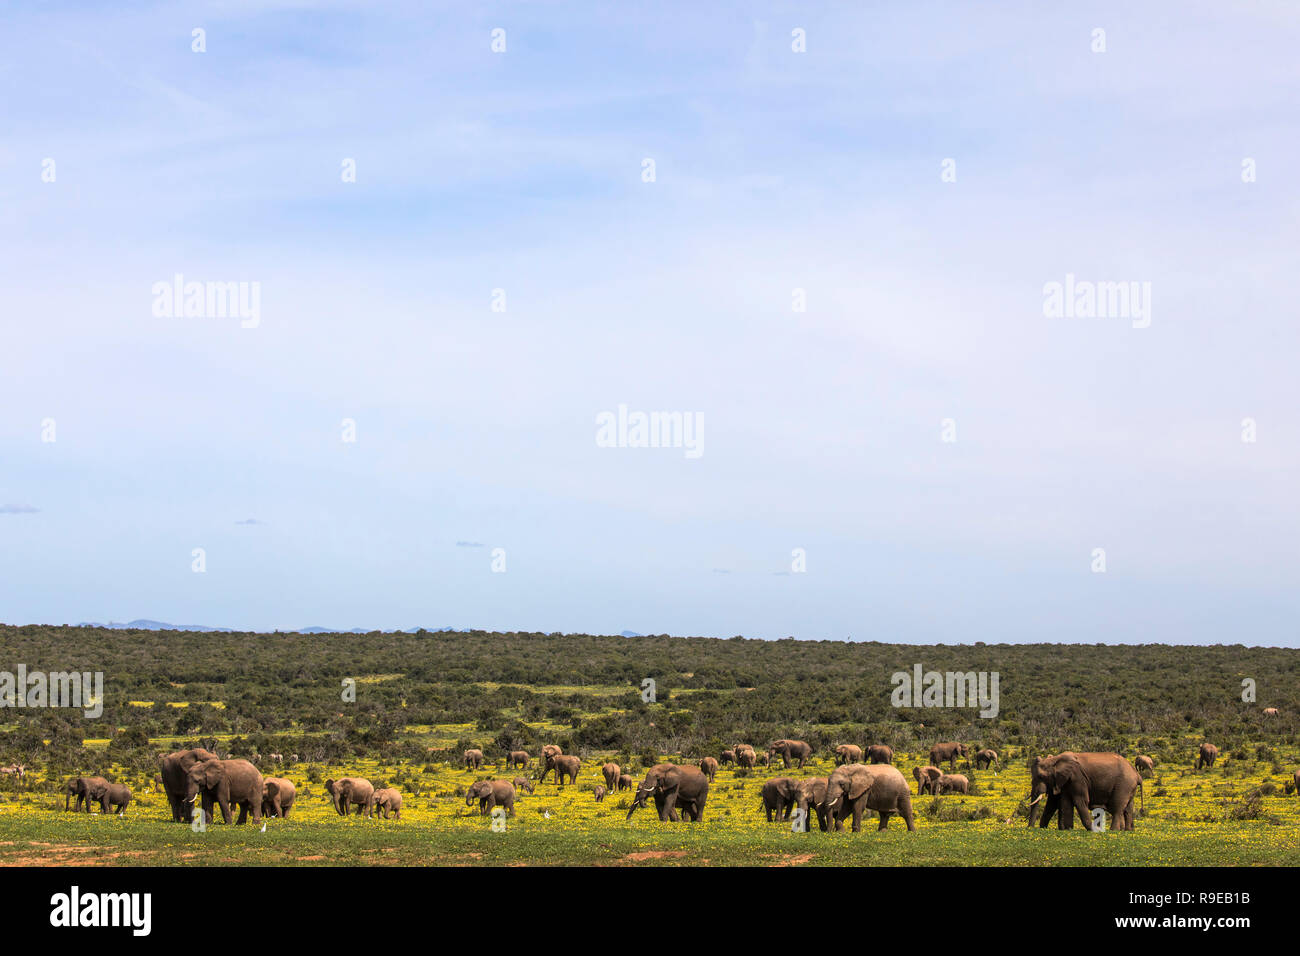 El elefante africano (Loxodonta africana) en springflowers, Parque Nacional de Elefantes Addo, Eastern Cape, Sudáfrica Foto de stock